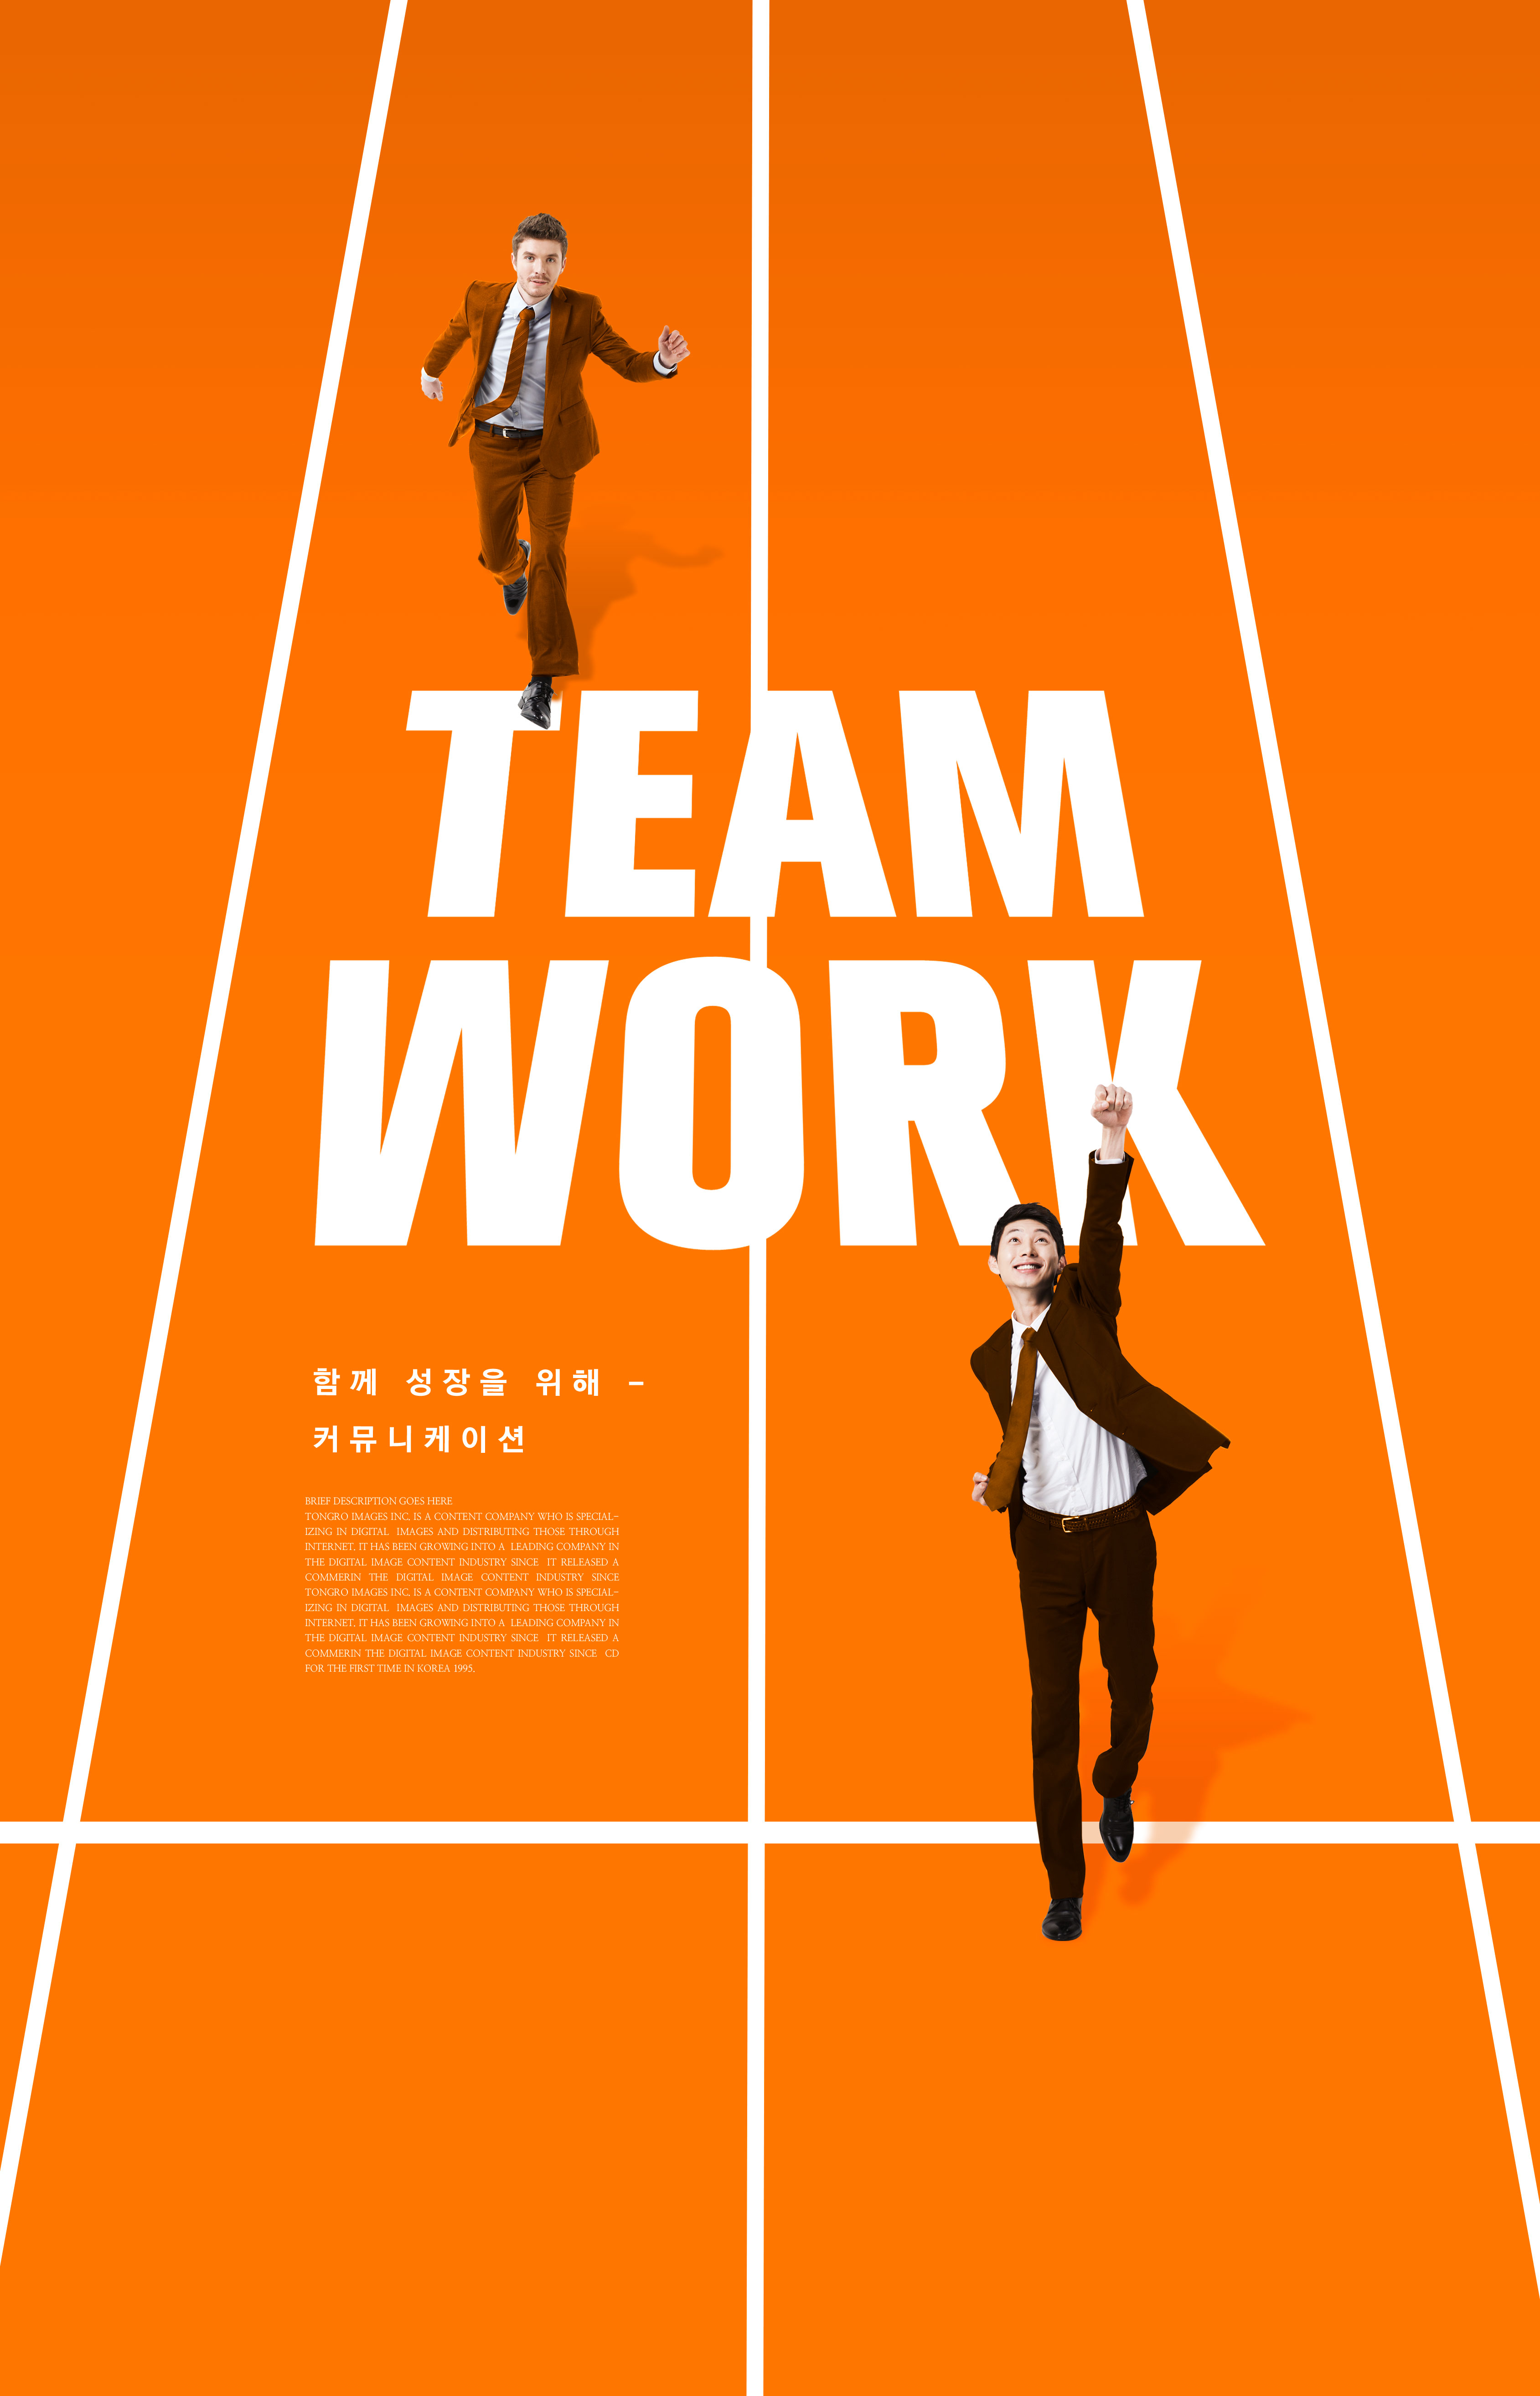 蓝&橙纯色系简约风格团队合作主题海报设计套装[PSD]插图(6)